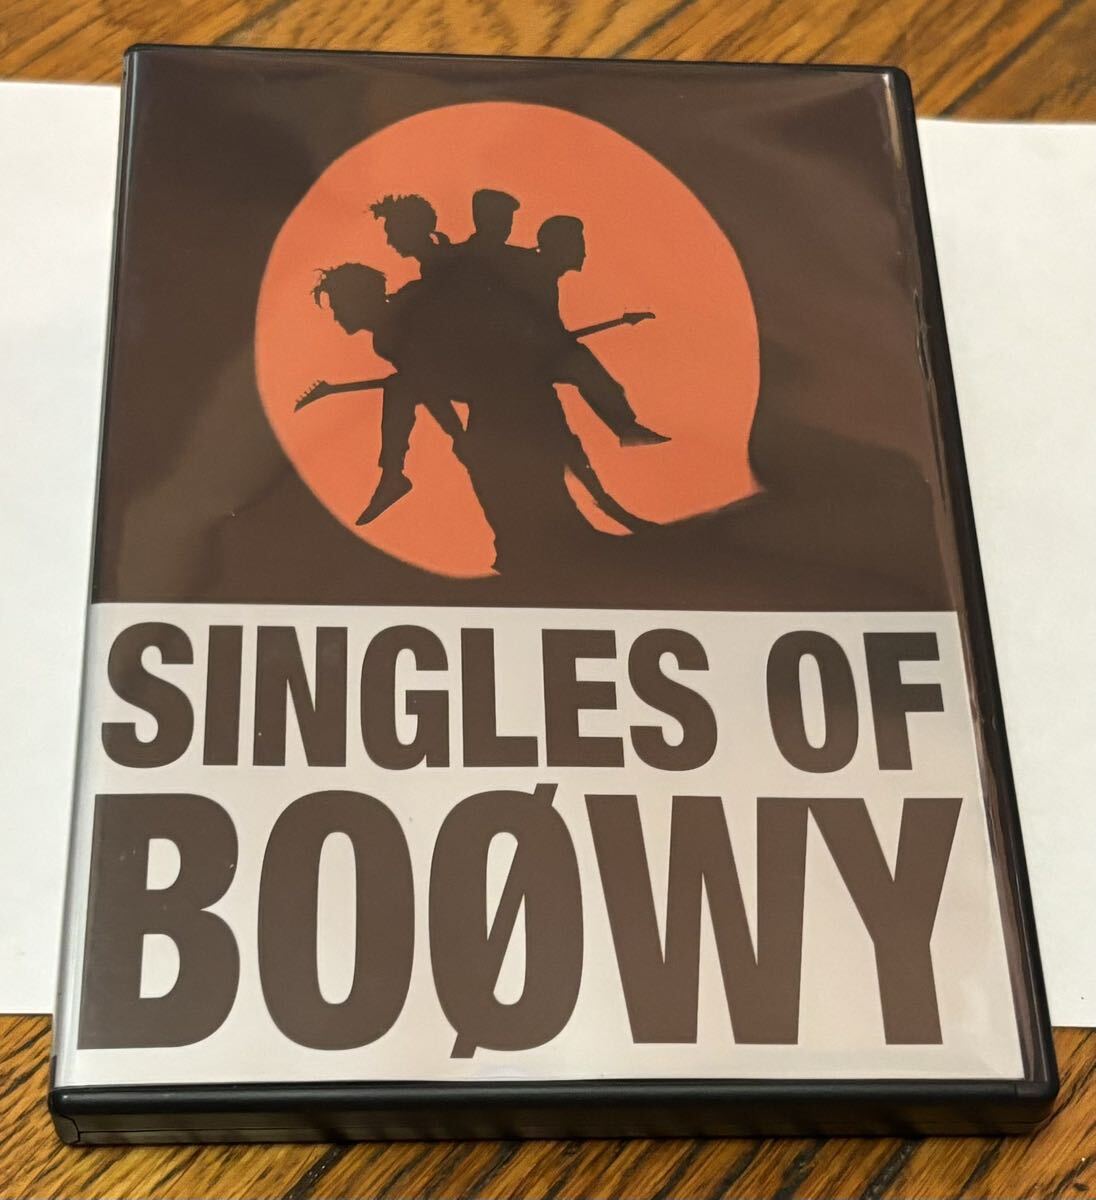 音楽 邦楽 J-ROCK J-POP BOOWY ボウイ SINGLES OF BOOWY DVD版 中古。の画像1